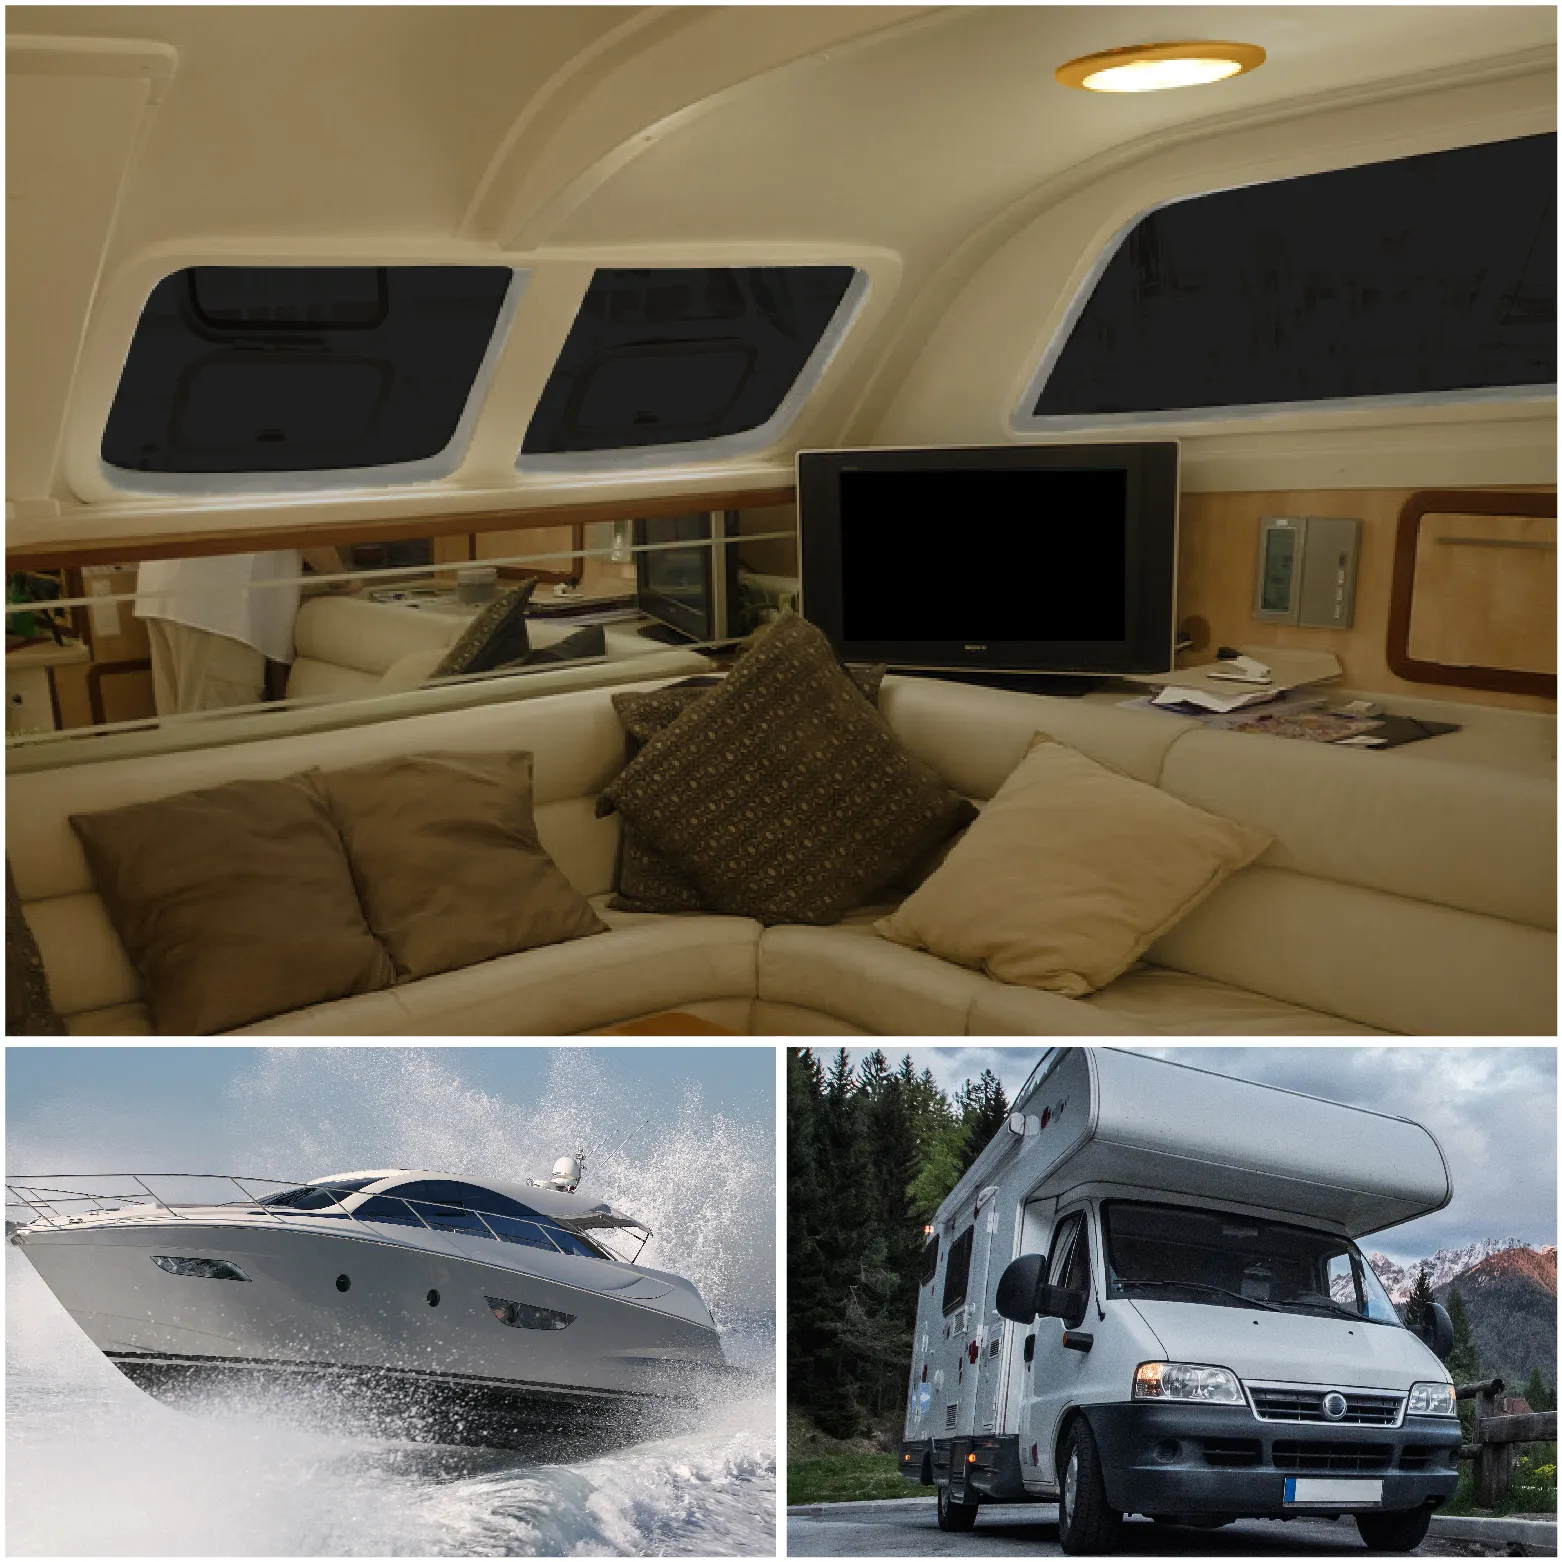 Luz de techo de cúpula IP67 para caravana, luz LED blanca cálida y fría de 150mm para caravana marina, Campervan, RV